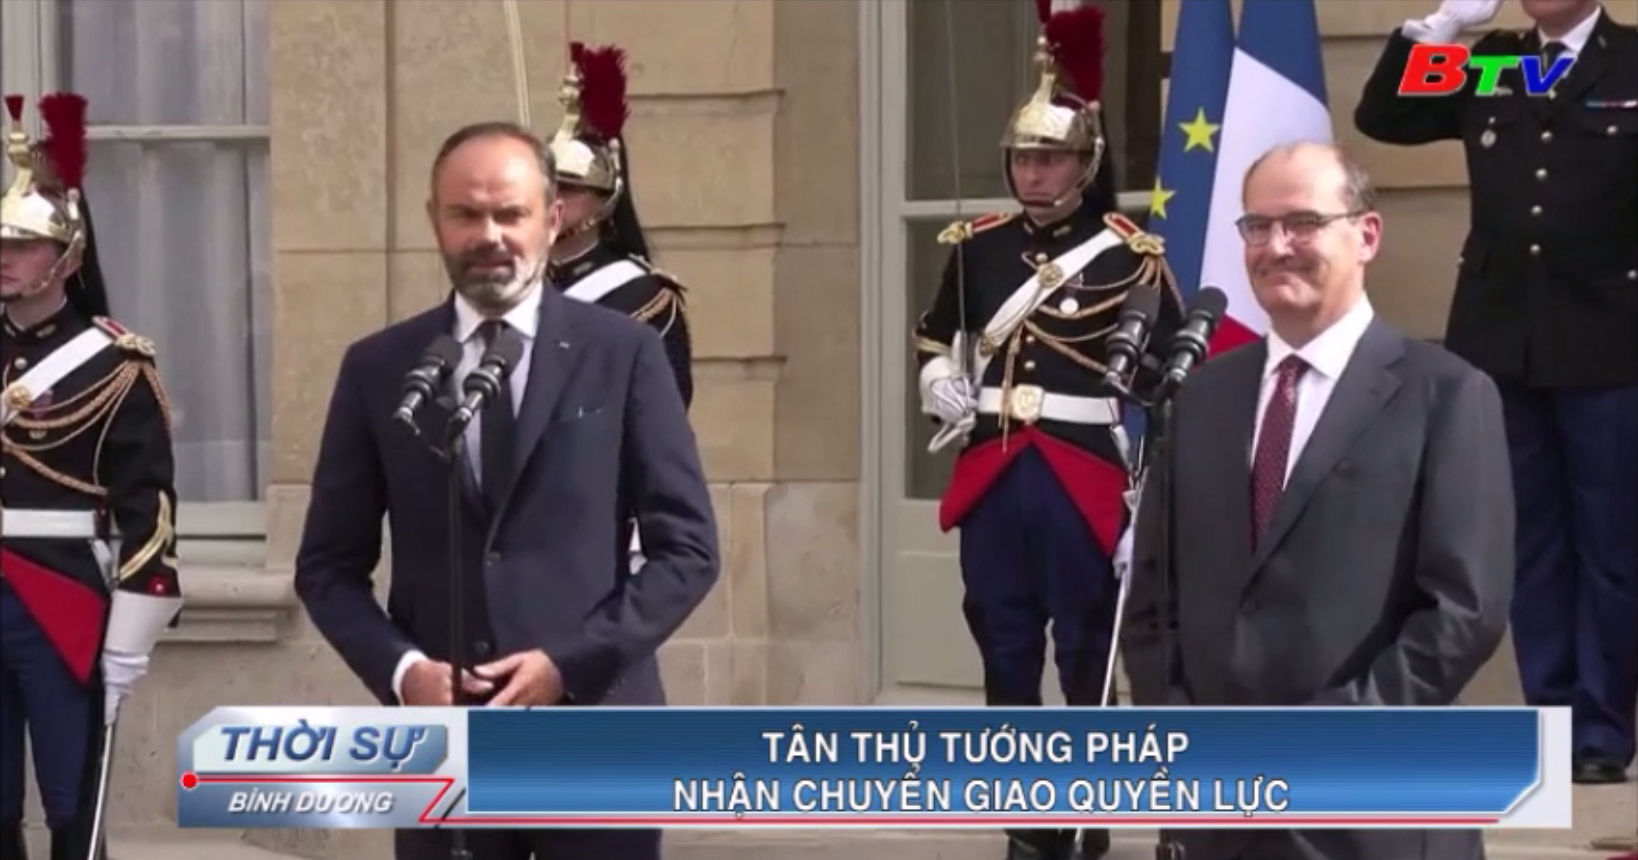 Tân Thủ tướng Pháp nhận chuyển giao quyền lực